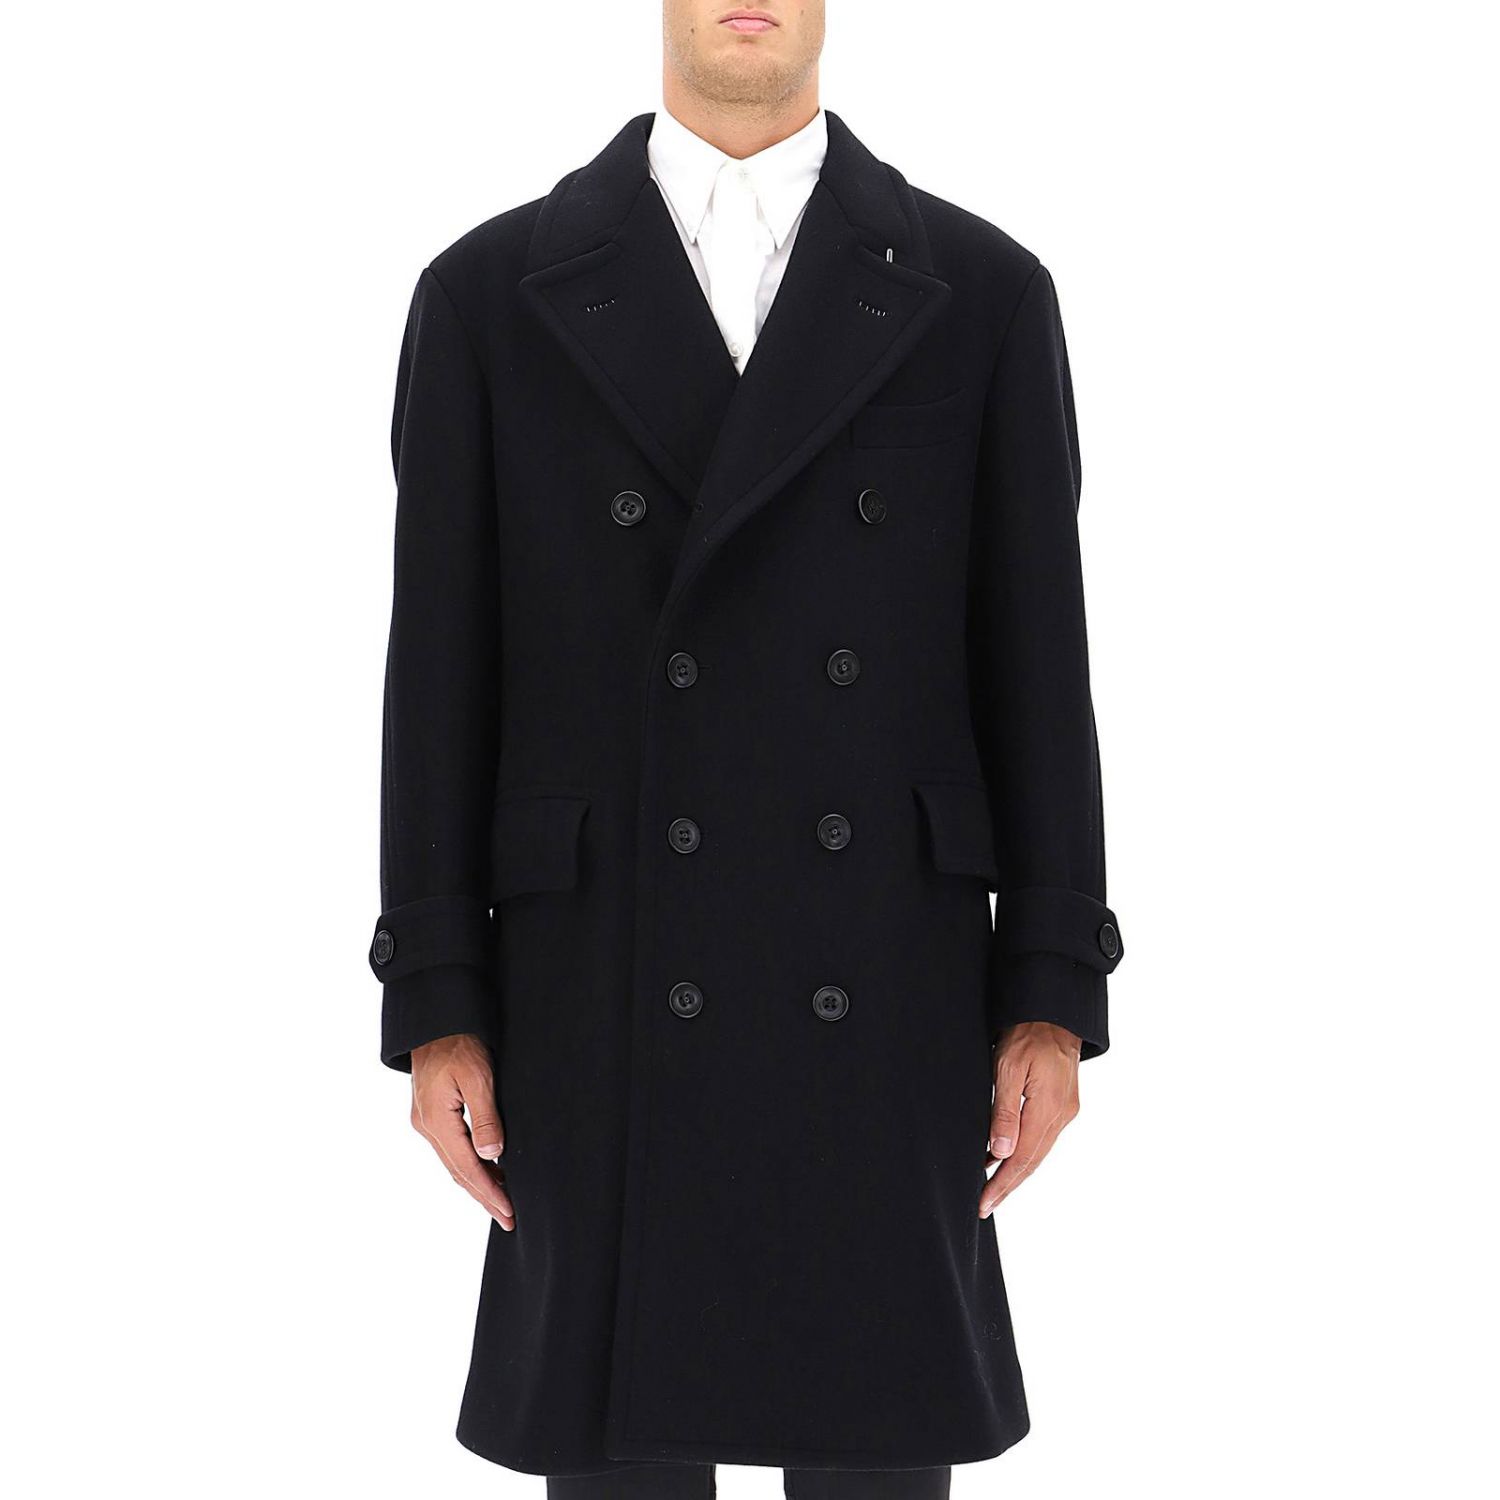 TOM FORD Outlet: Coat men - Black | TOM FORD coat BR072 TFO844 online ...